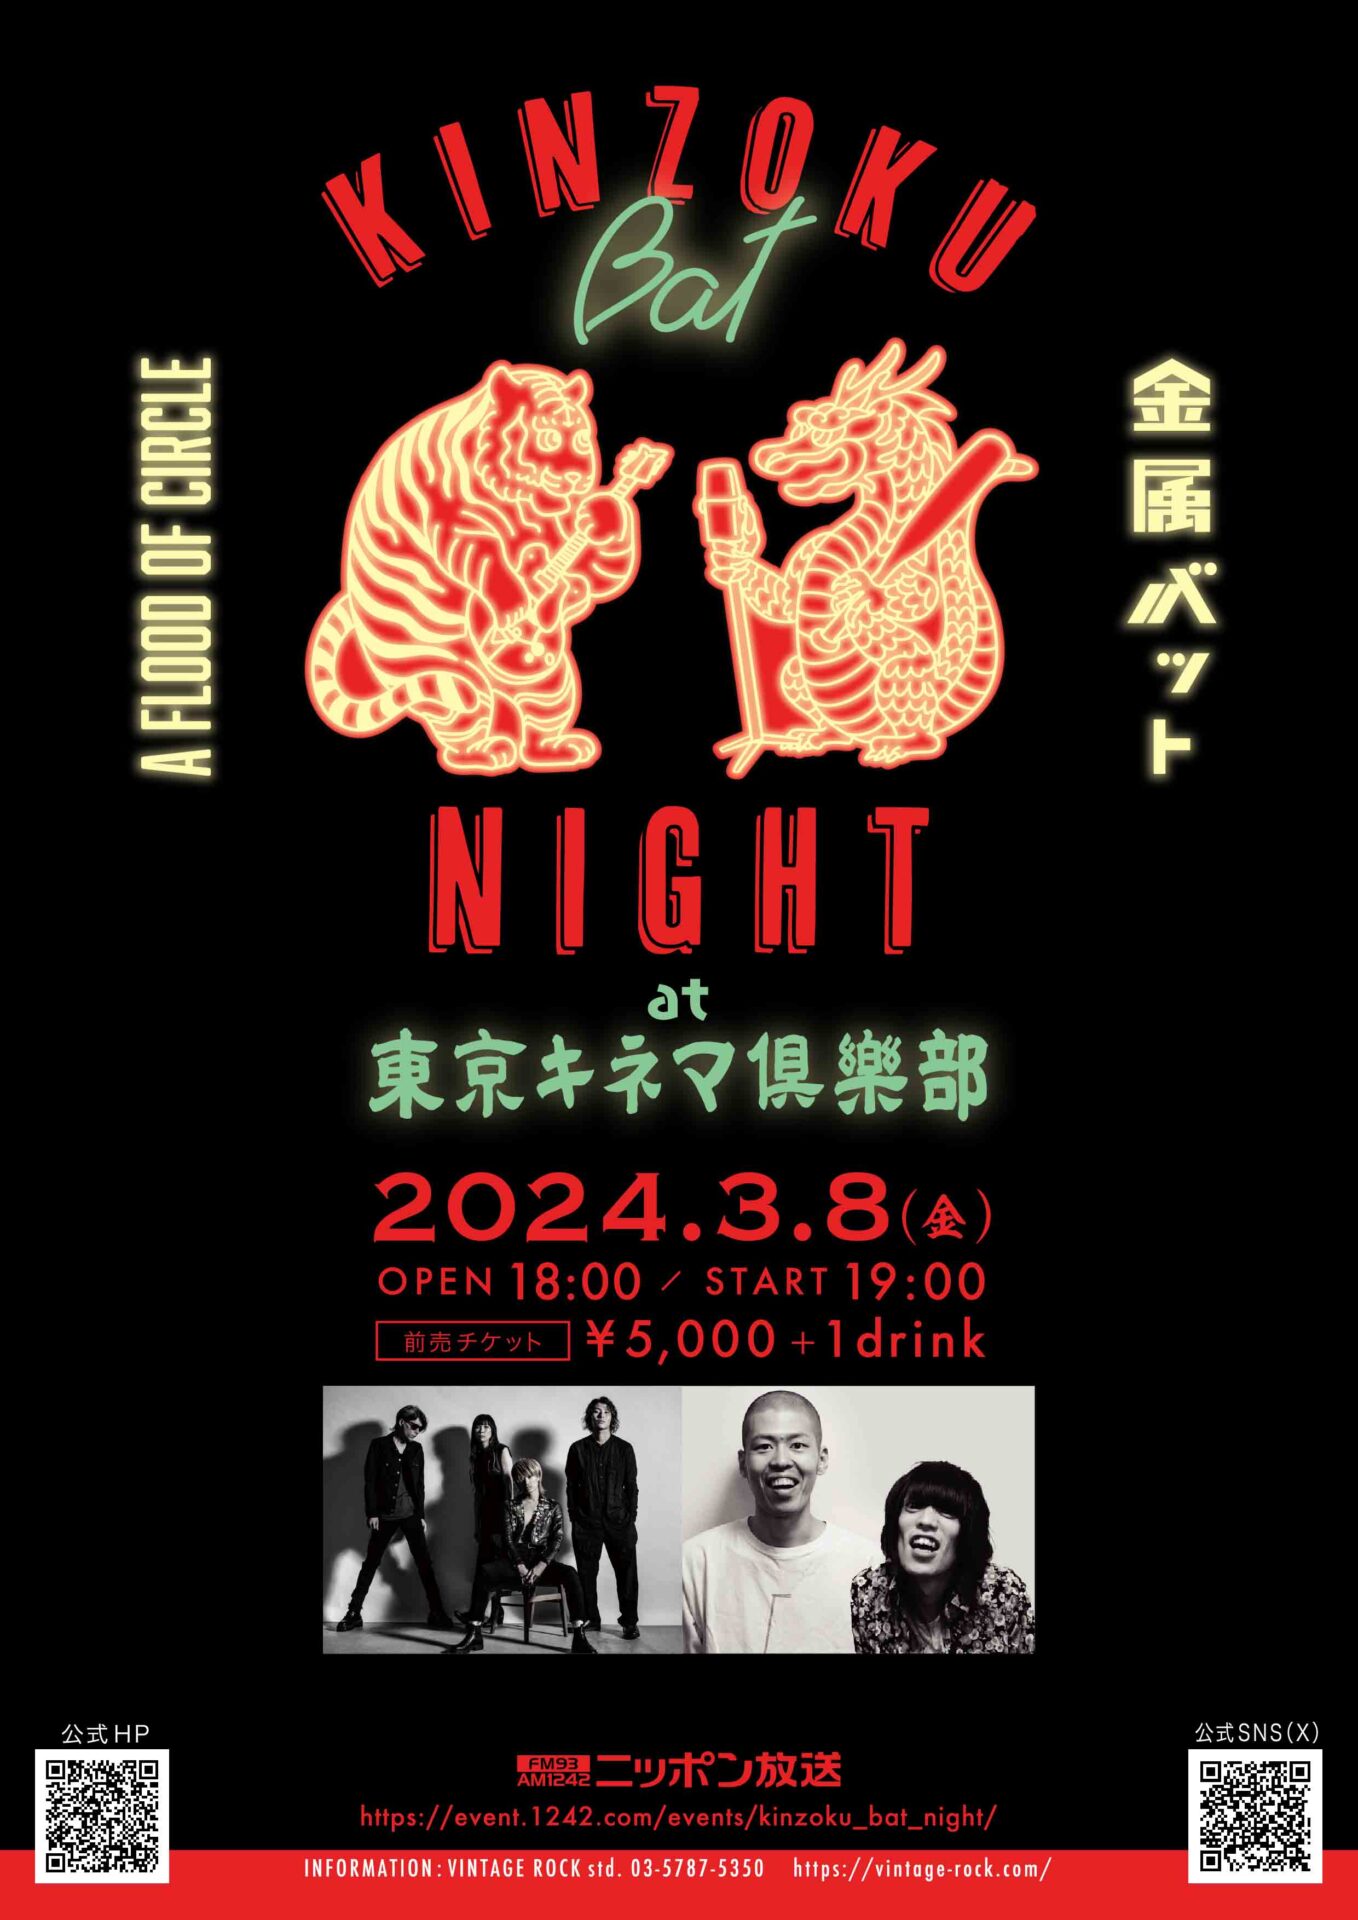 「KINZOKU Bat NIGHT at 東京キネマ俱楽部」